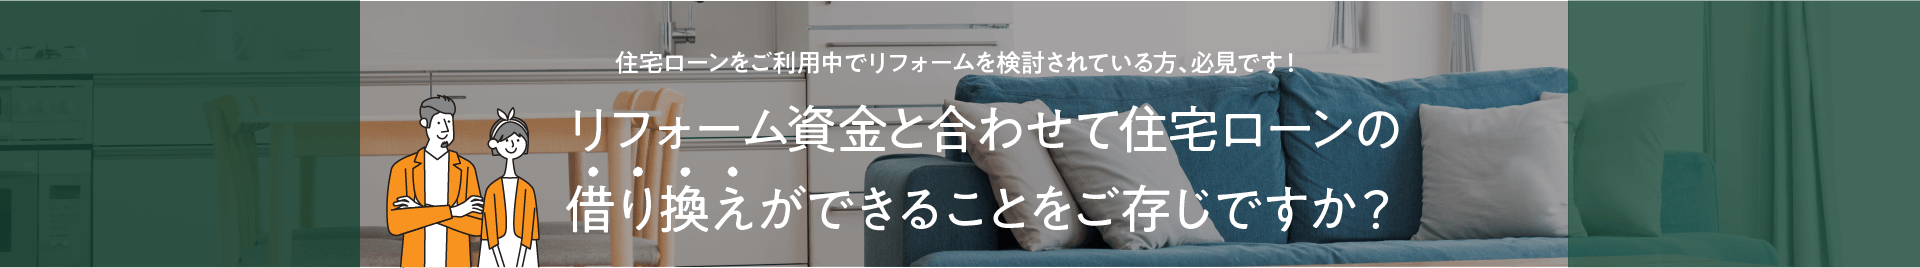 【特集】リフォーム+住宅ローン借り換えで賢くお得に!?